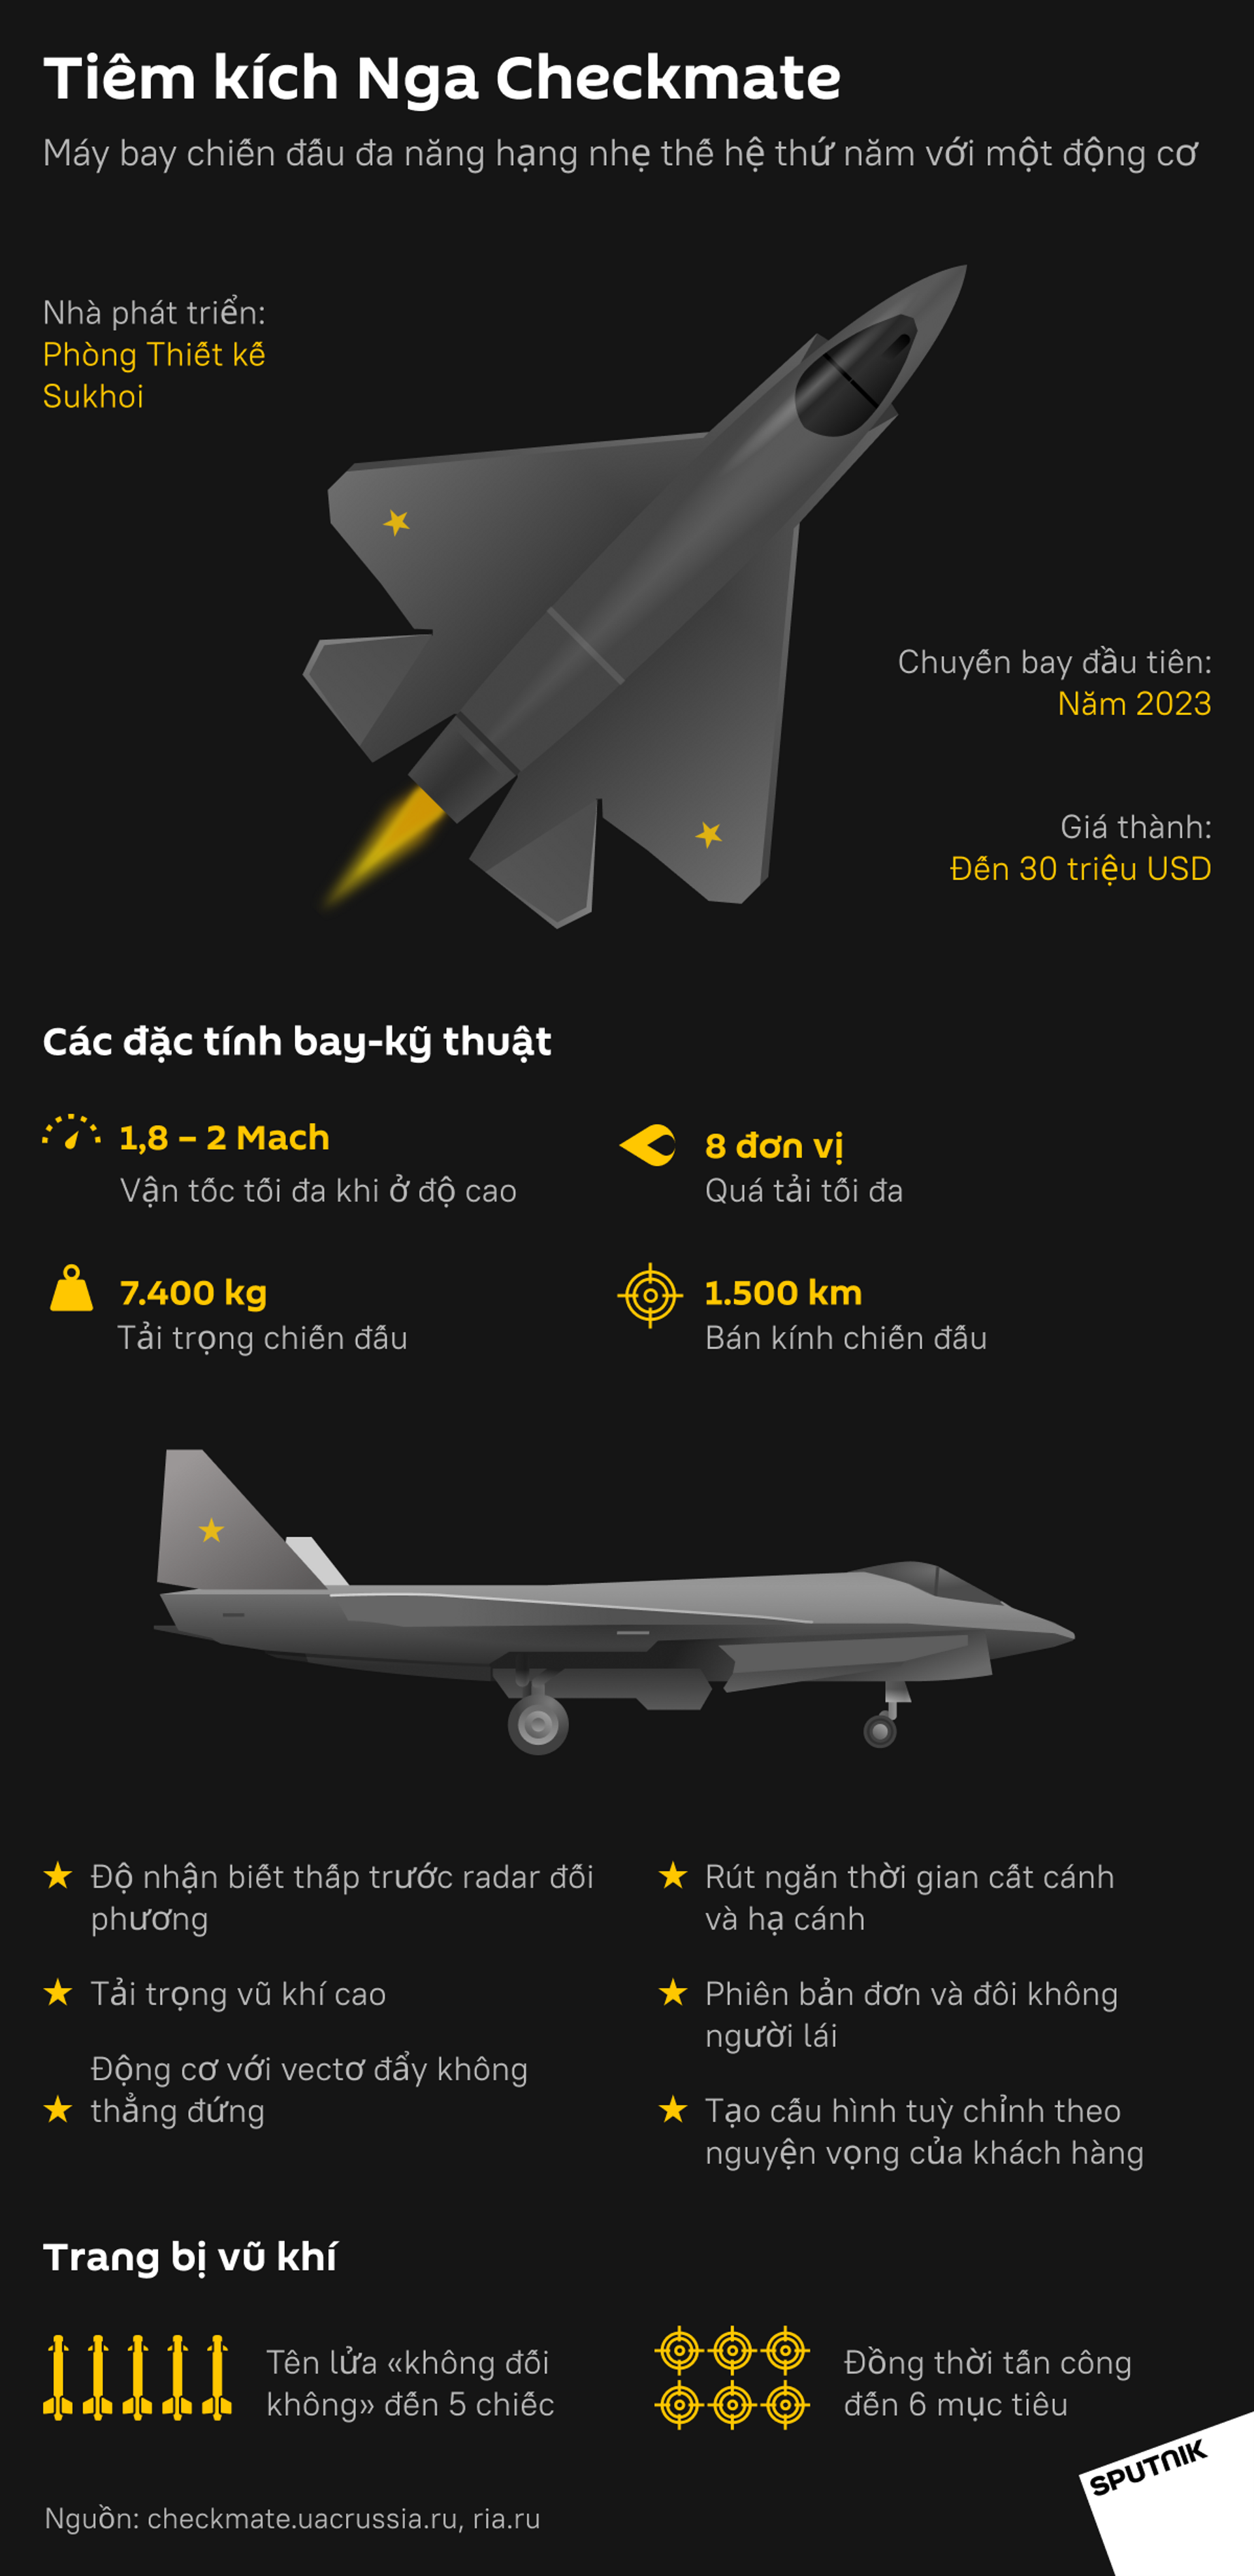 Thông số về máy bay chiến đấu Checkmate mới của Nga khiến người Mỹ thất vọng về đất nước mình - Sputnik Việt Nam, 1920, 22.07.2021